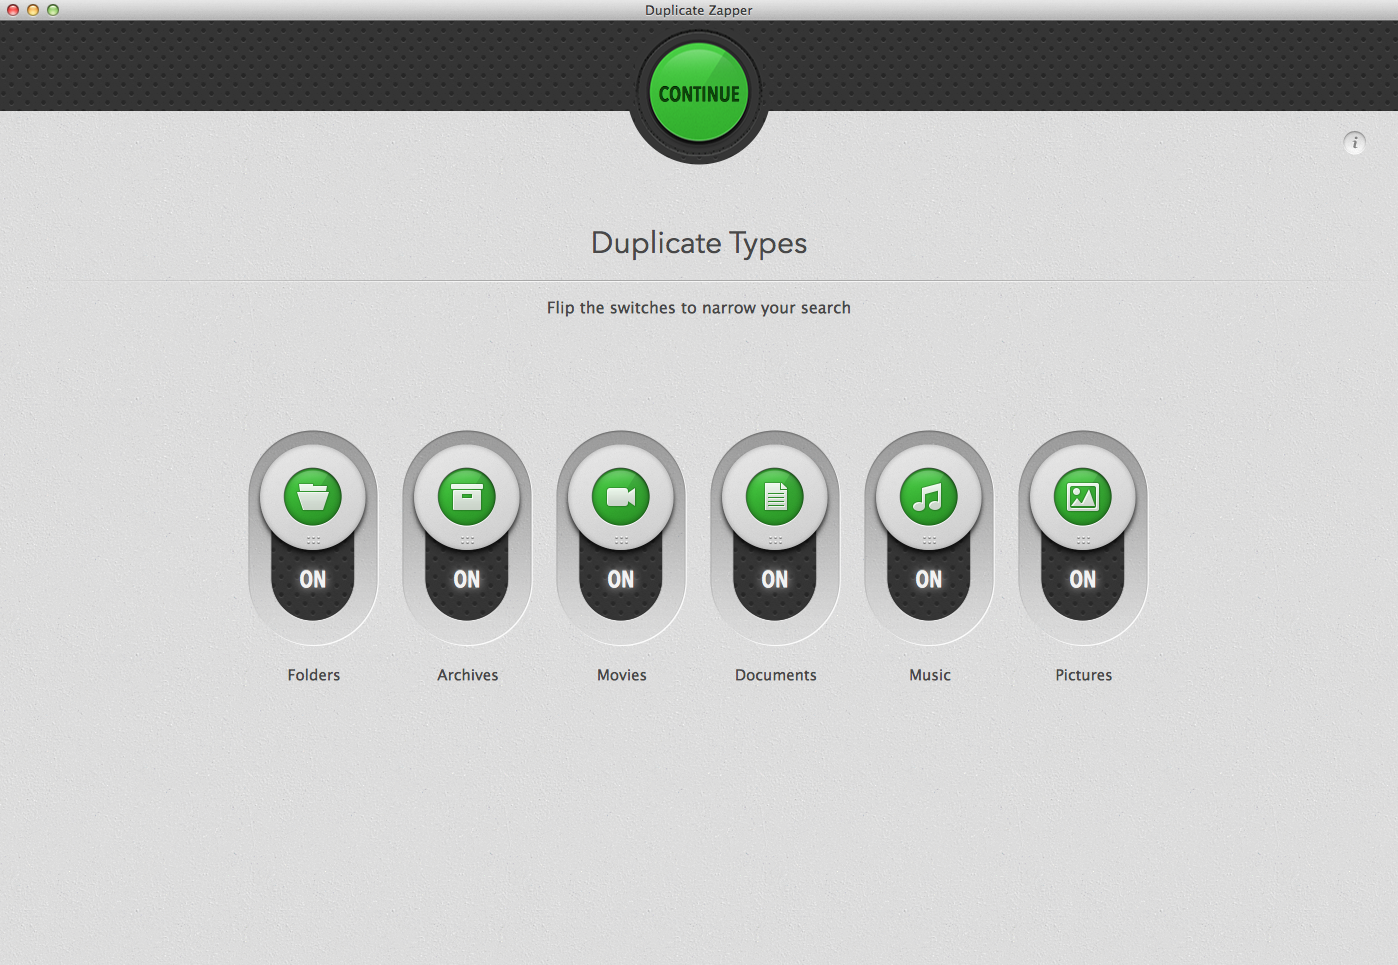 Duplicate Types